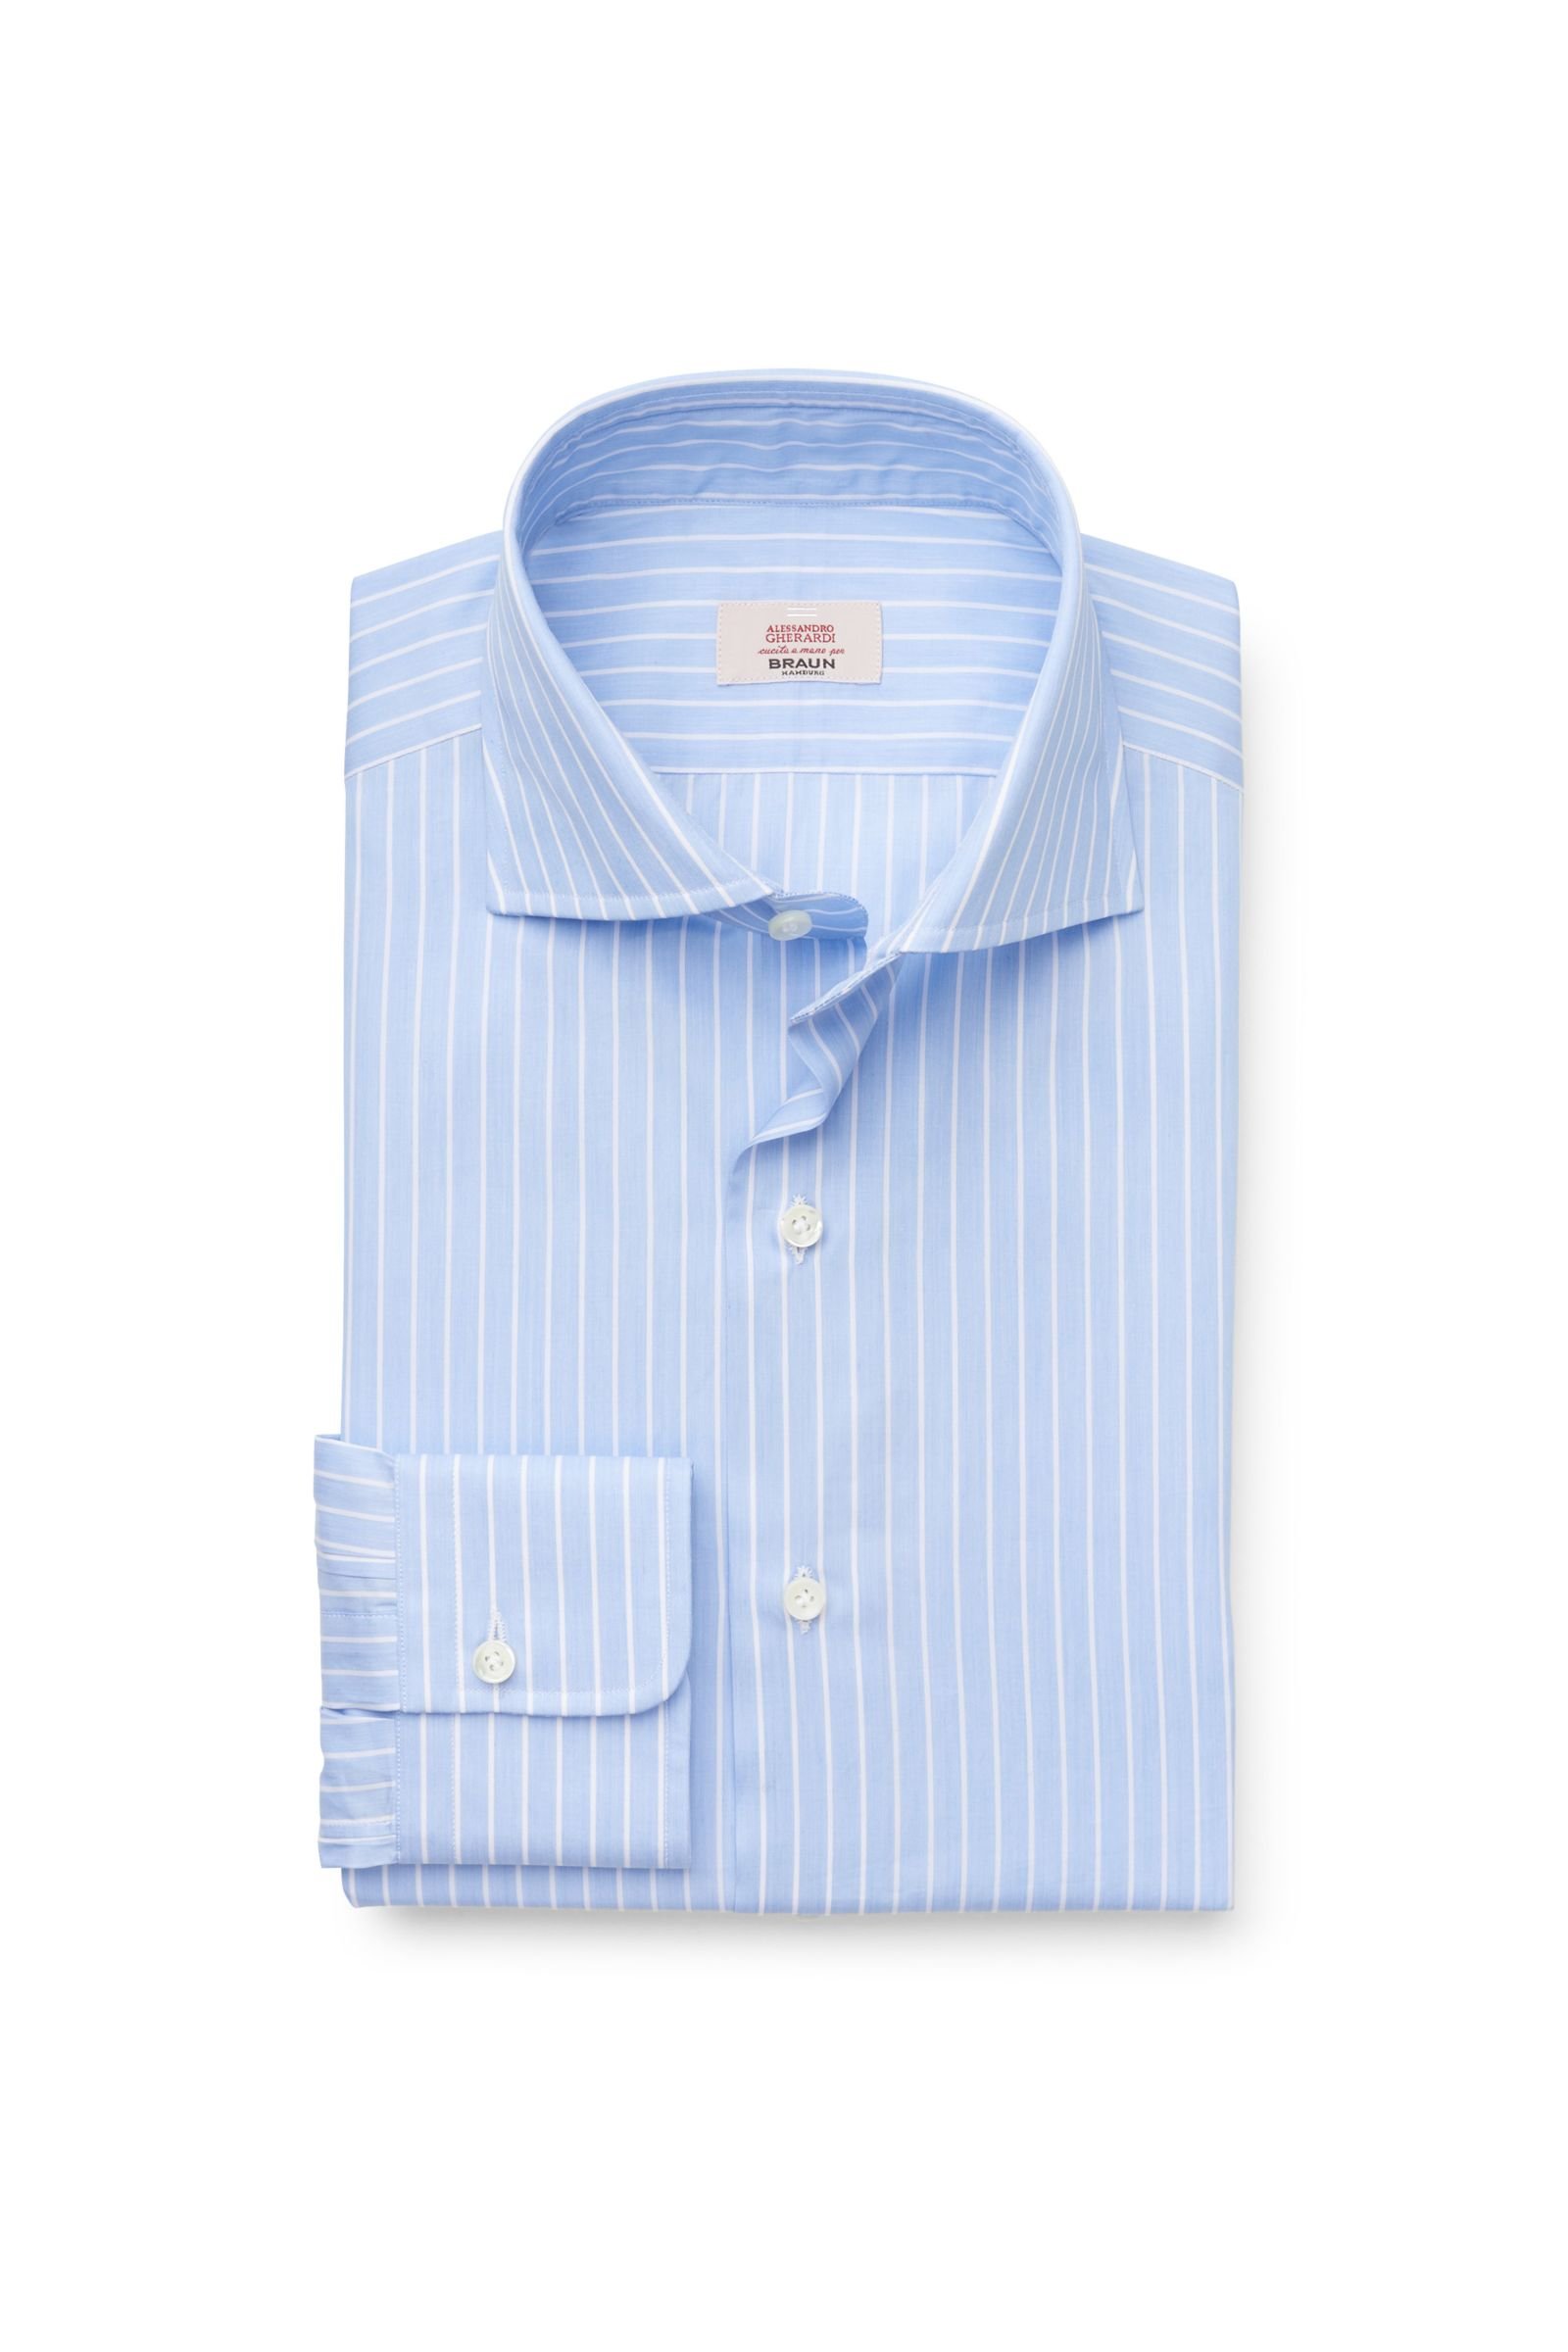 Business shirt shark collar light blue striped